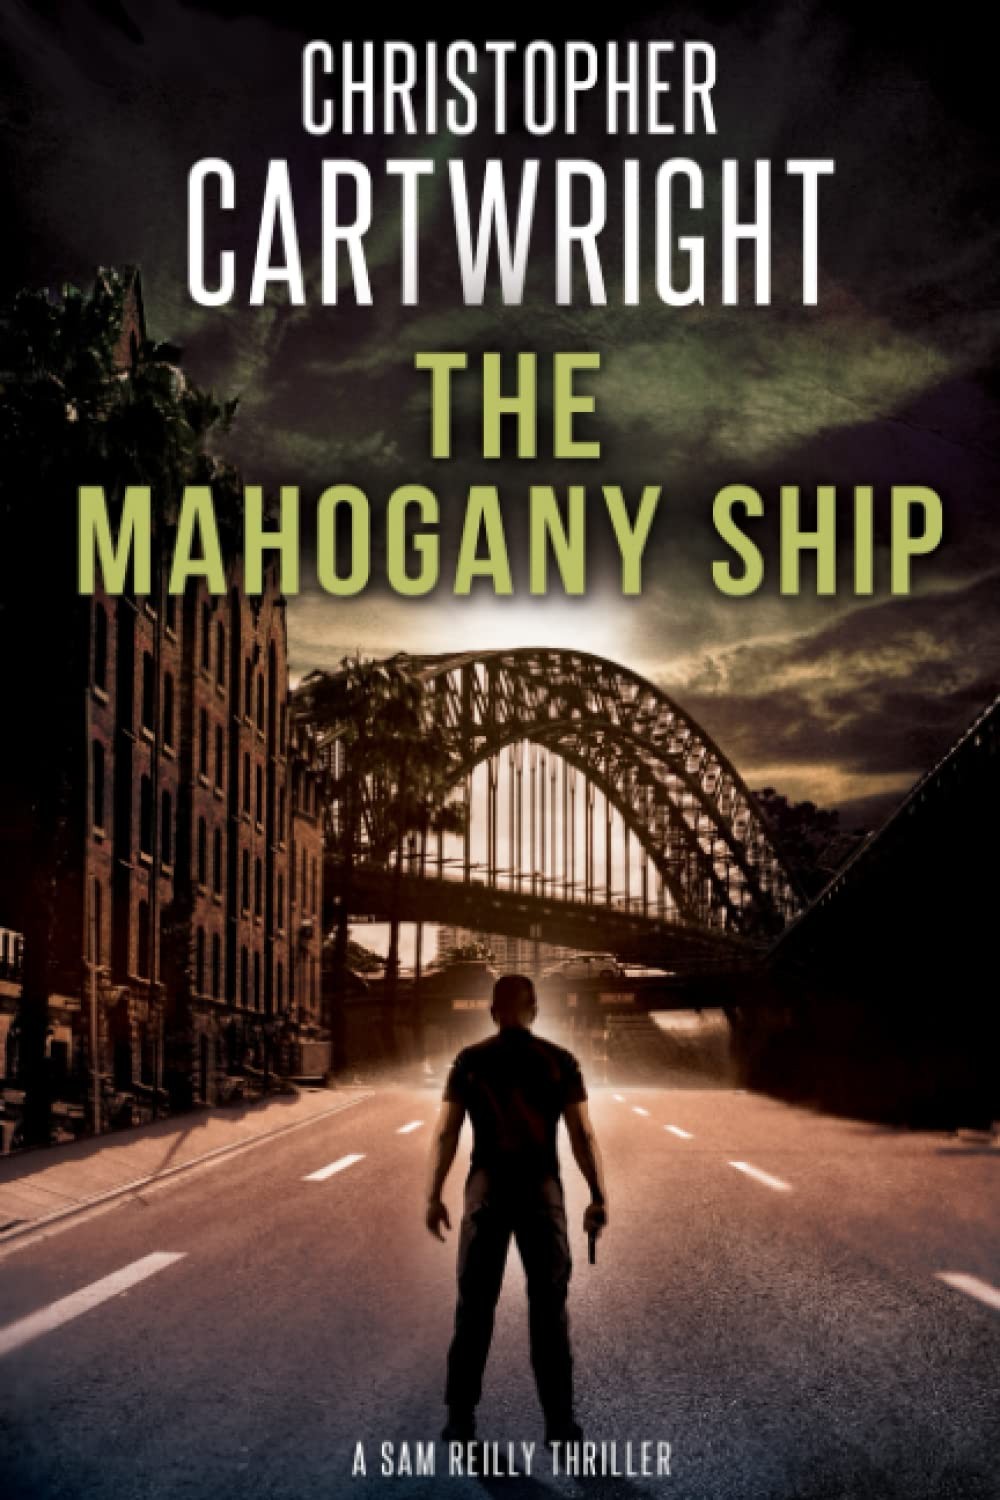 The Mahogany Ship